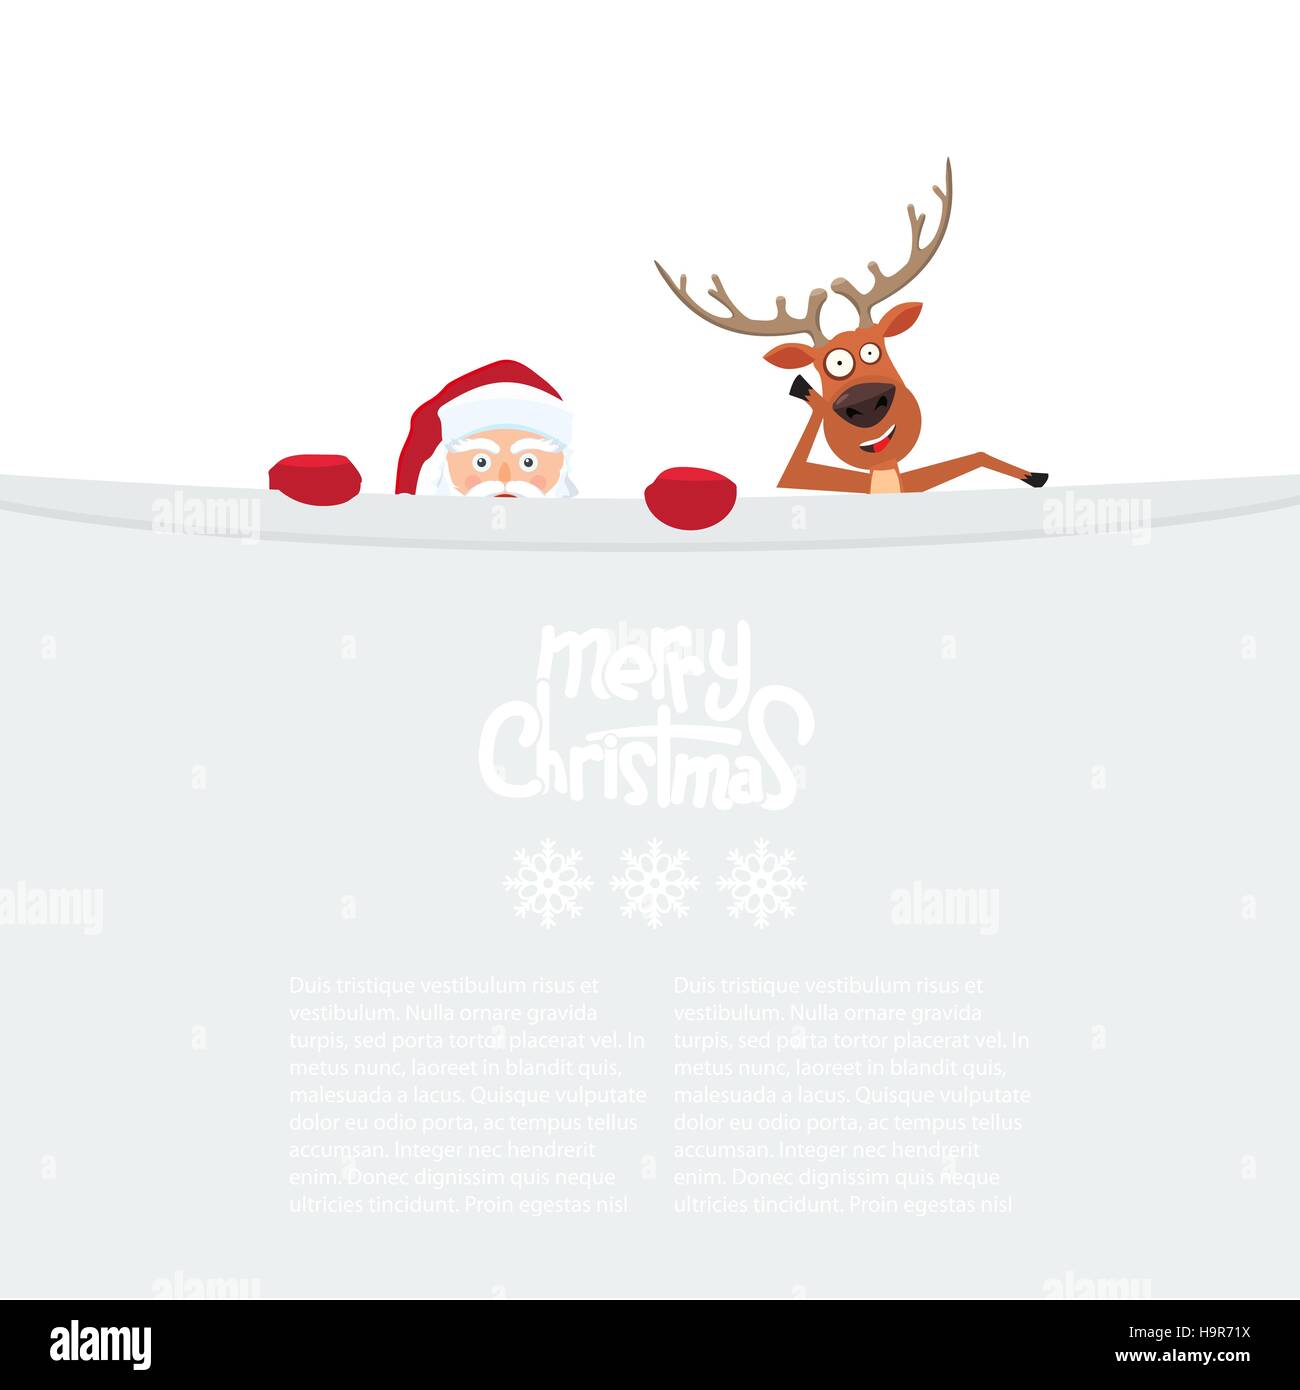 Cute cartoon Santa Claus and reindeer looking behind blank billboard. Stock Vector